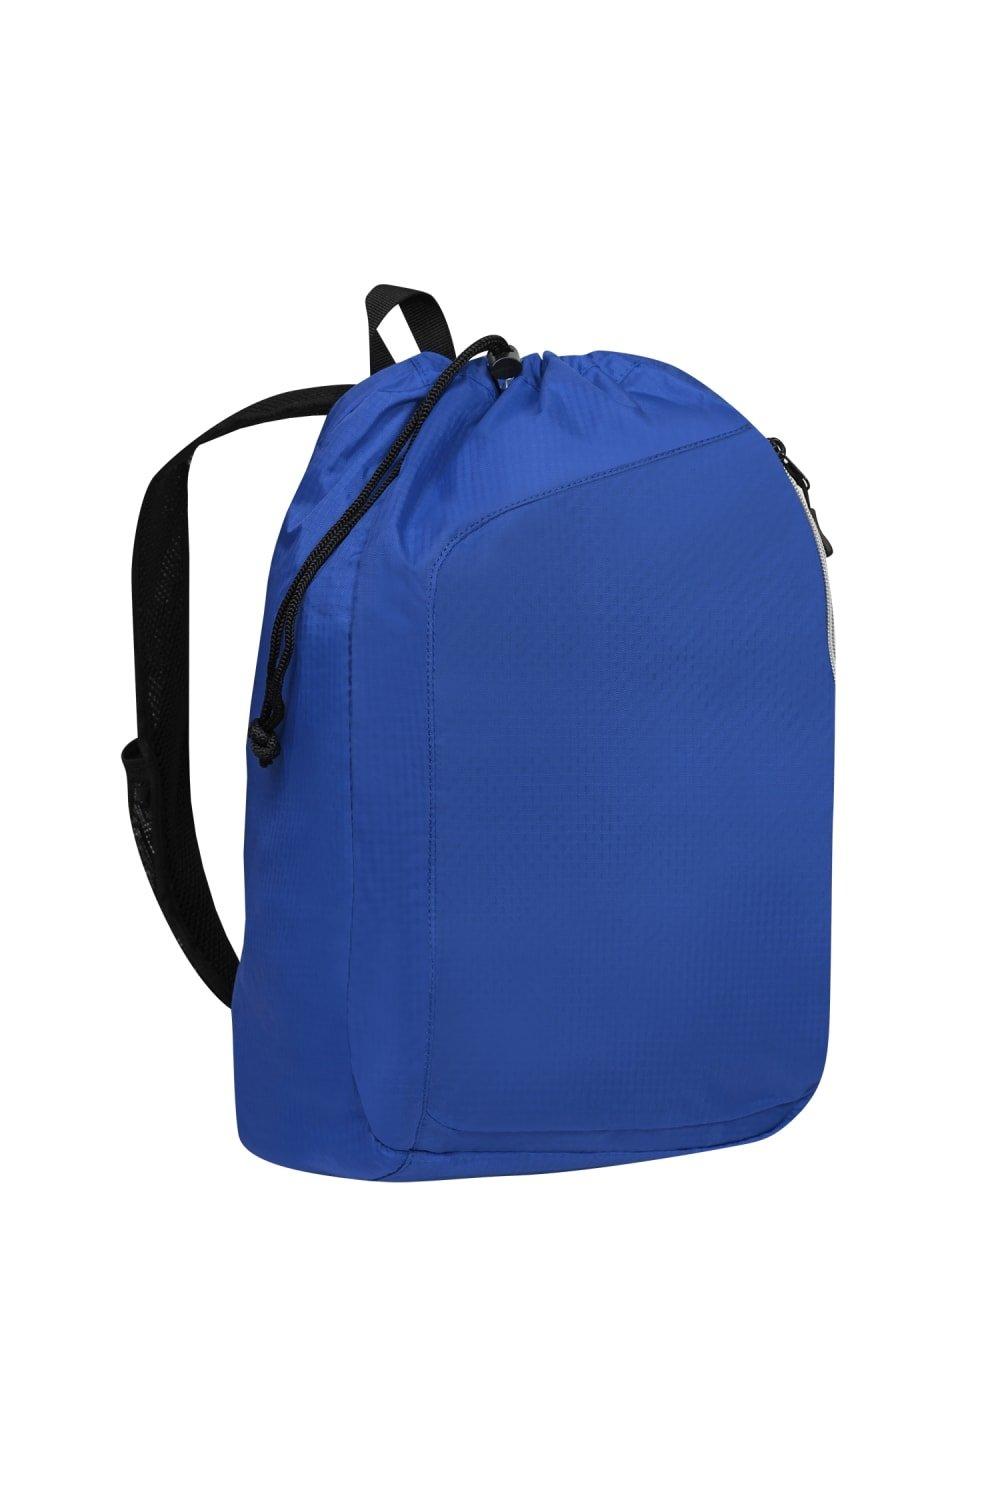 Рюкзак Endurance Sonic с одним ремнем (2 шт.) Ogio, синий сумка endurance pulse на шнурке ogio синий